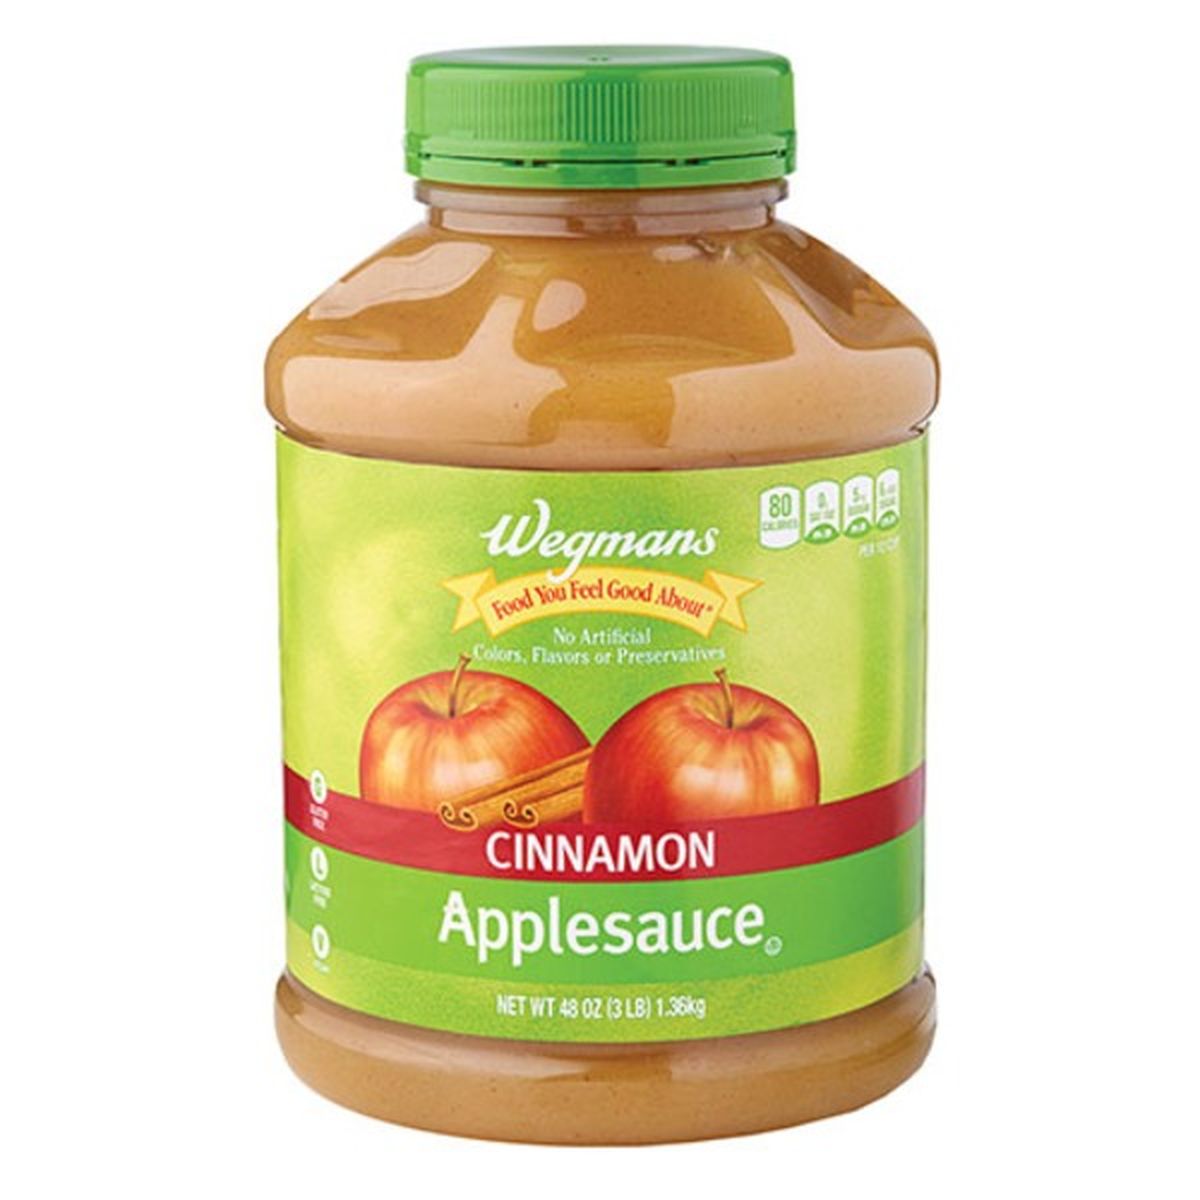 Calories in Wegmans Cinnamon Applesauce